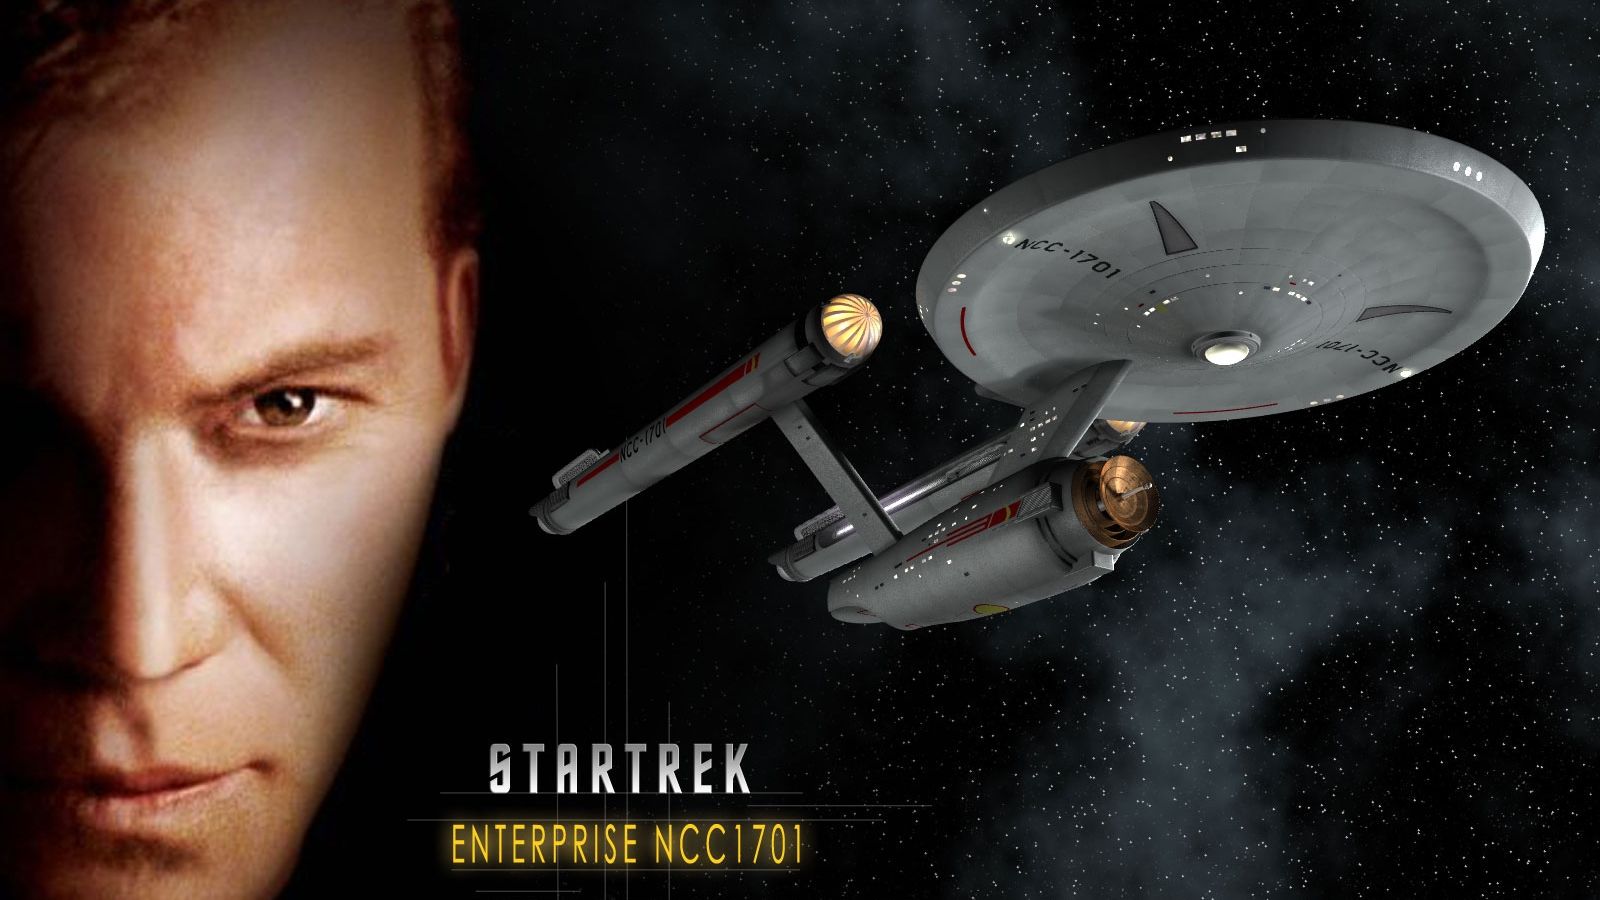 Free download Download Star Trek Original wallpaper Captain Kirk